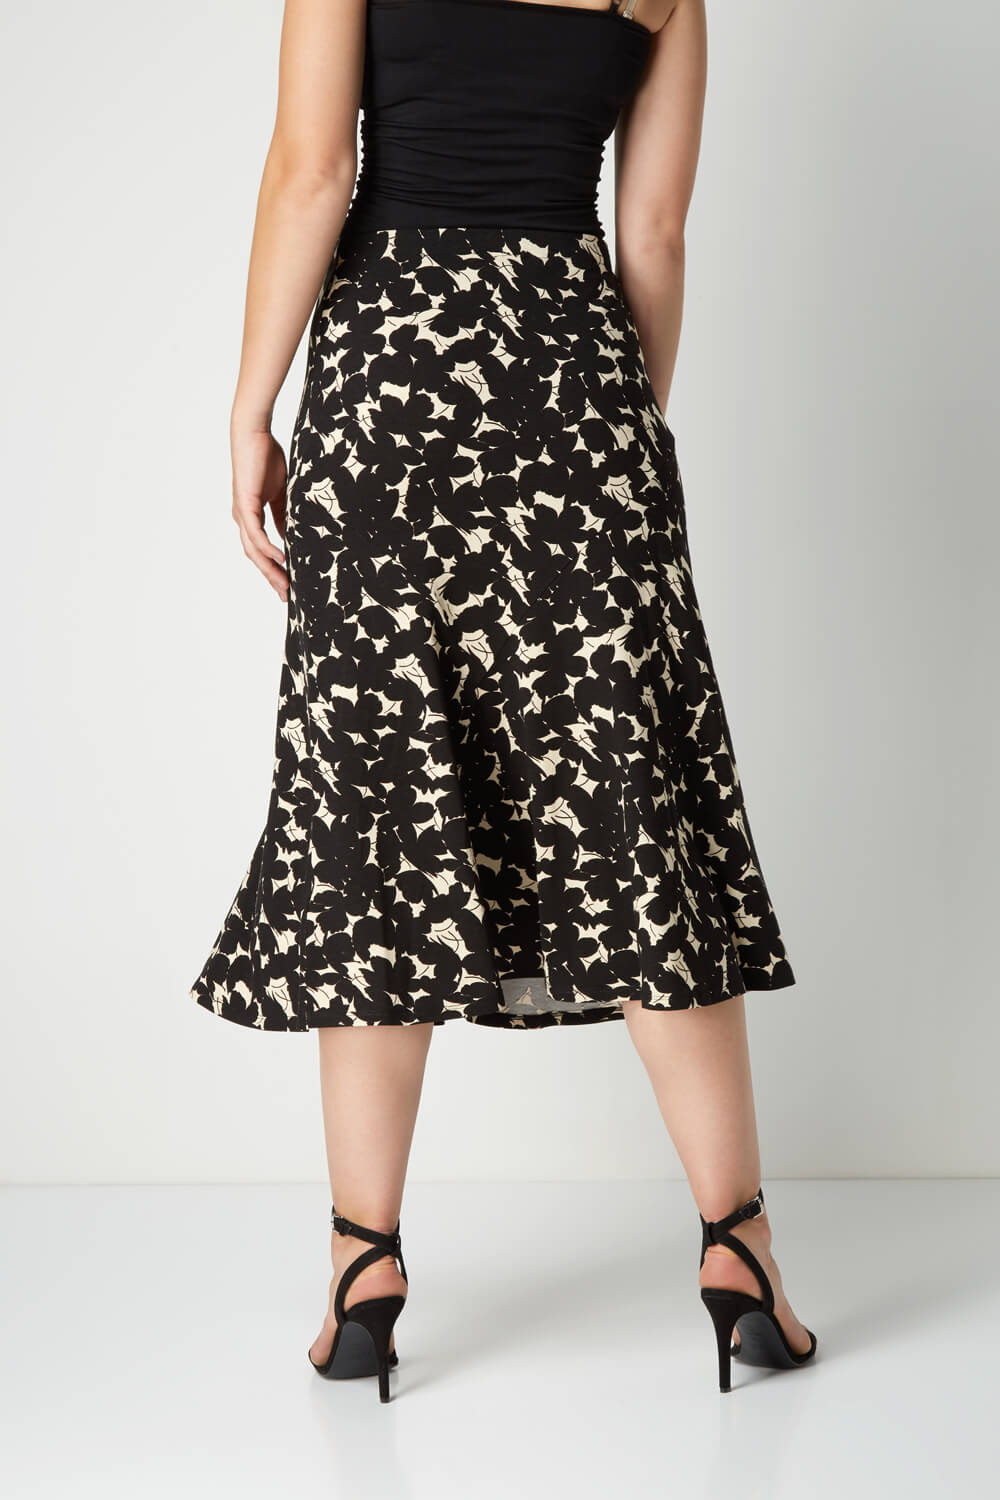 Floral Print Midi Skirt in Black - Roman Originals UK